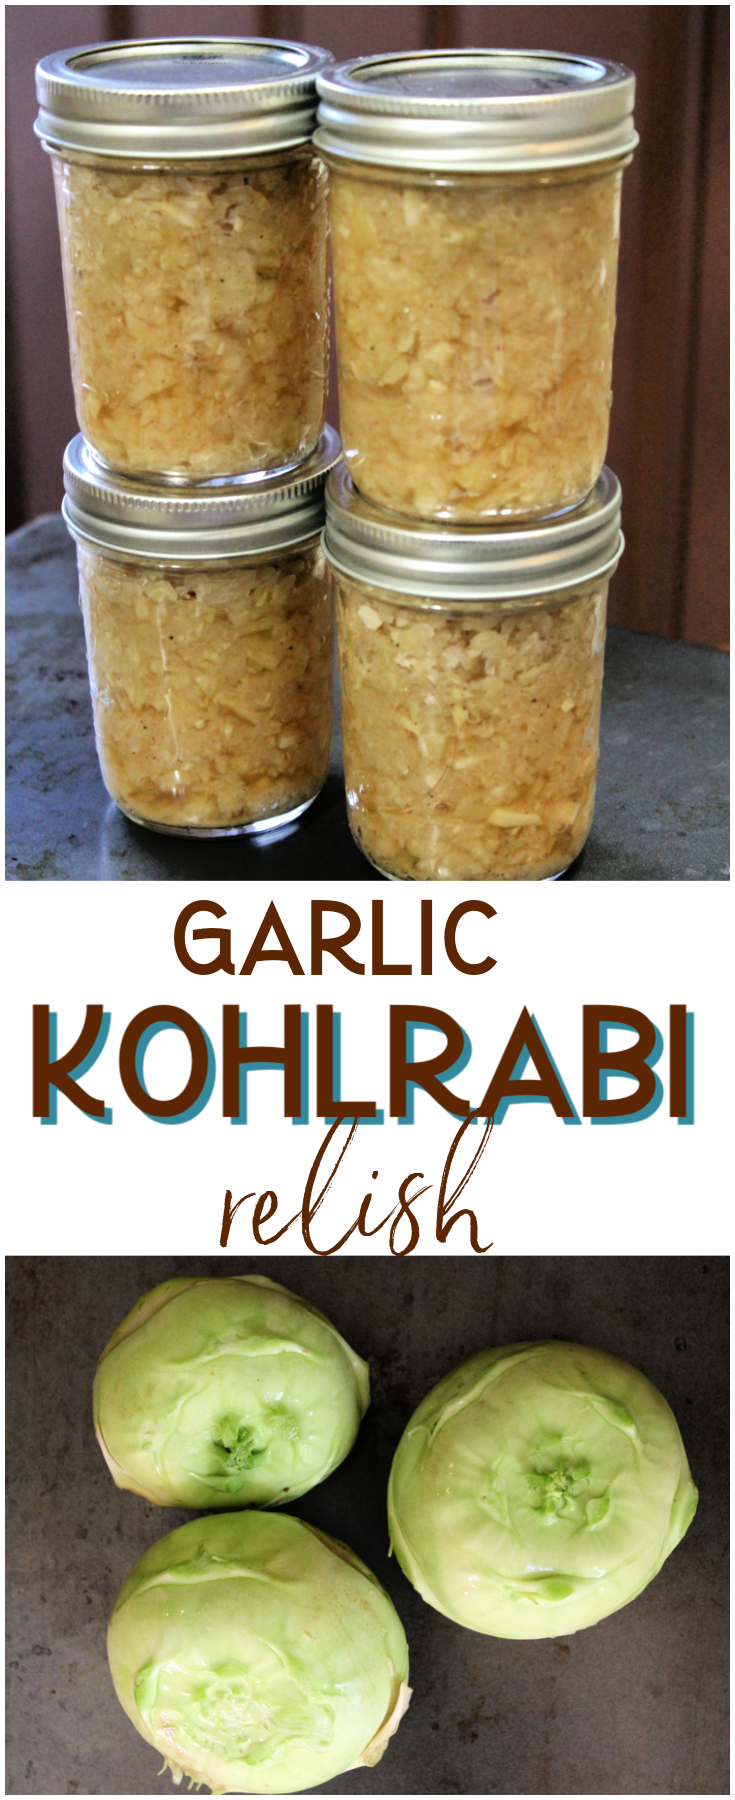 Kohlrabi Relish